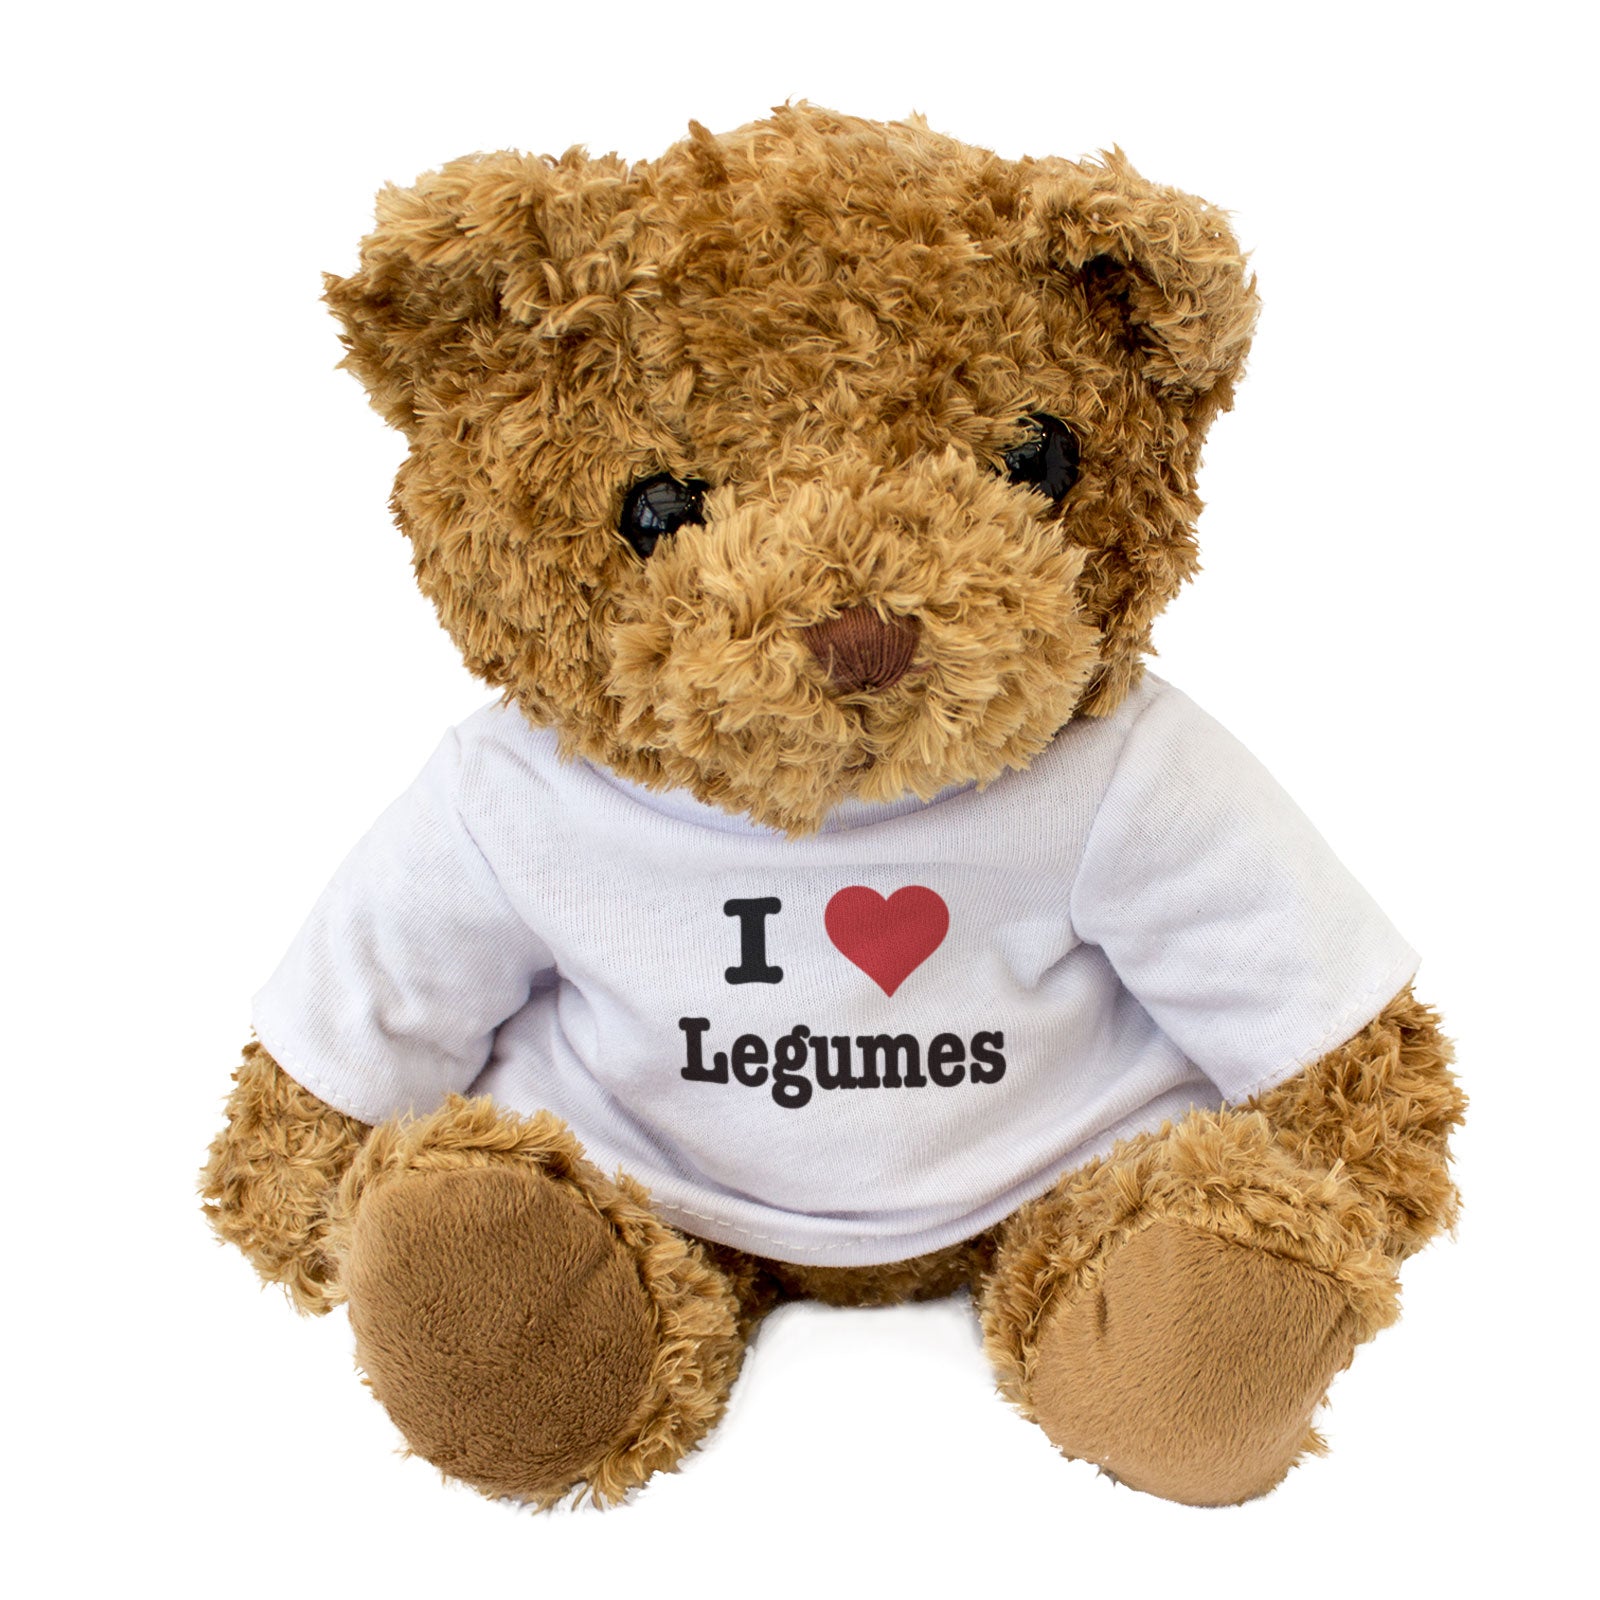 I Love Legumes - Teddy Bear